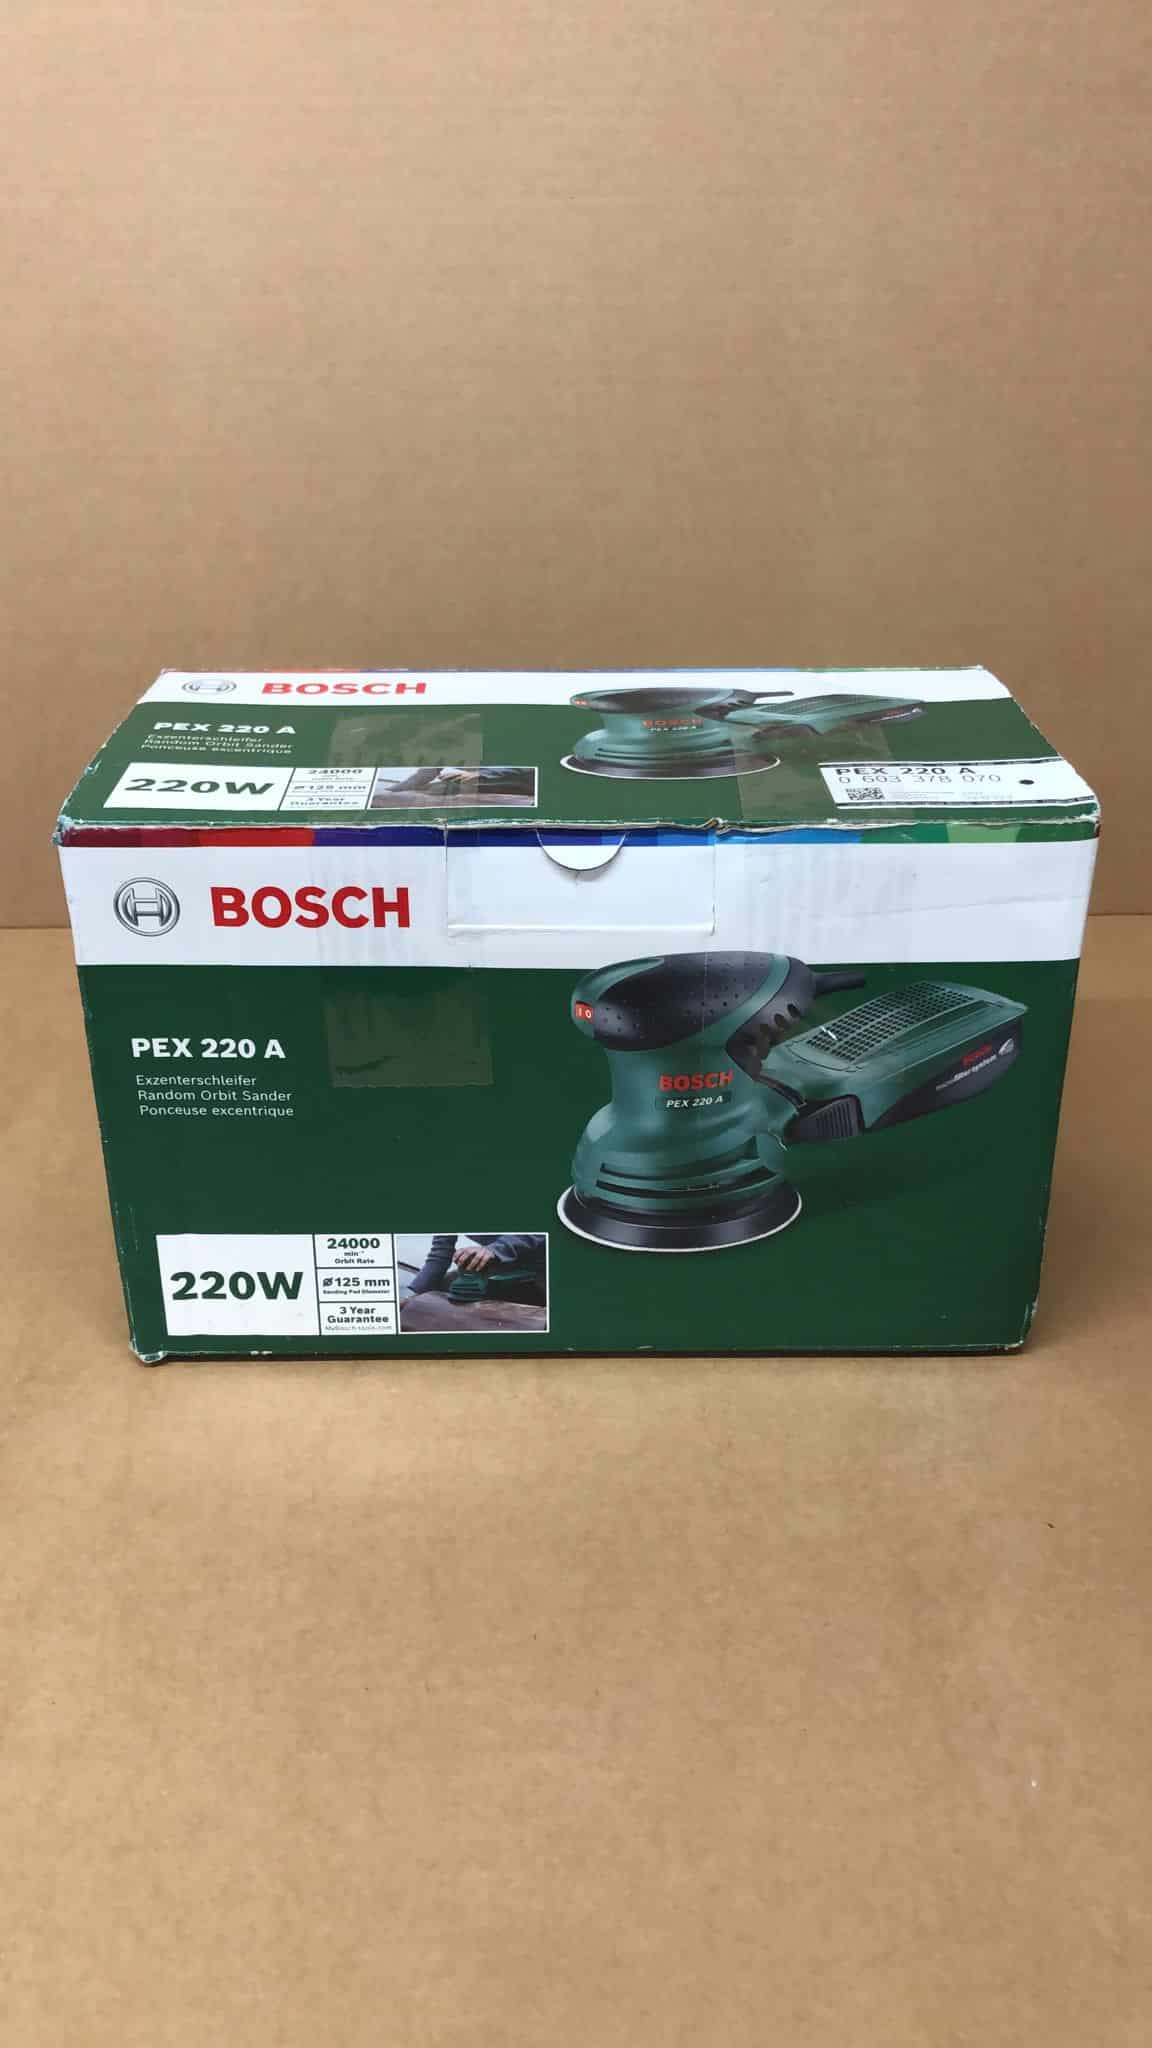 Bosch Home and Garden Random Orbit Sander PEX 220 A (220 W)-8070